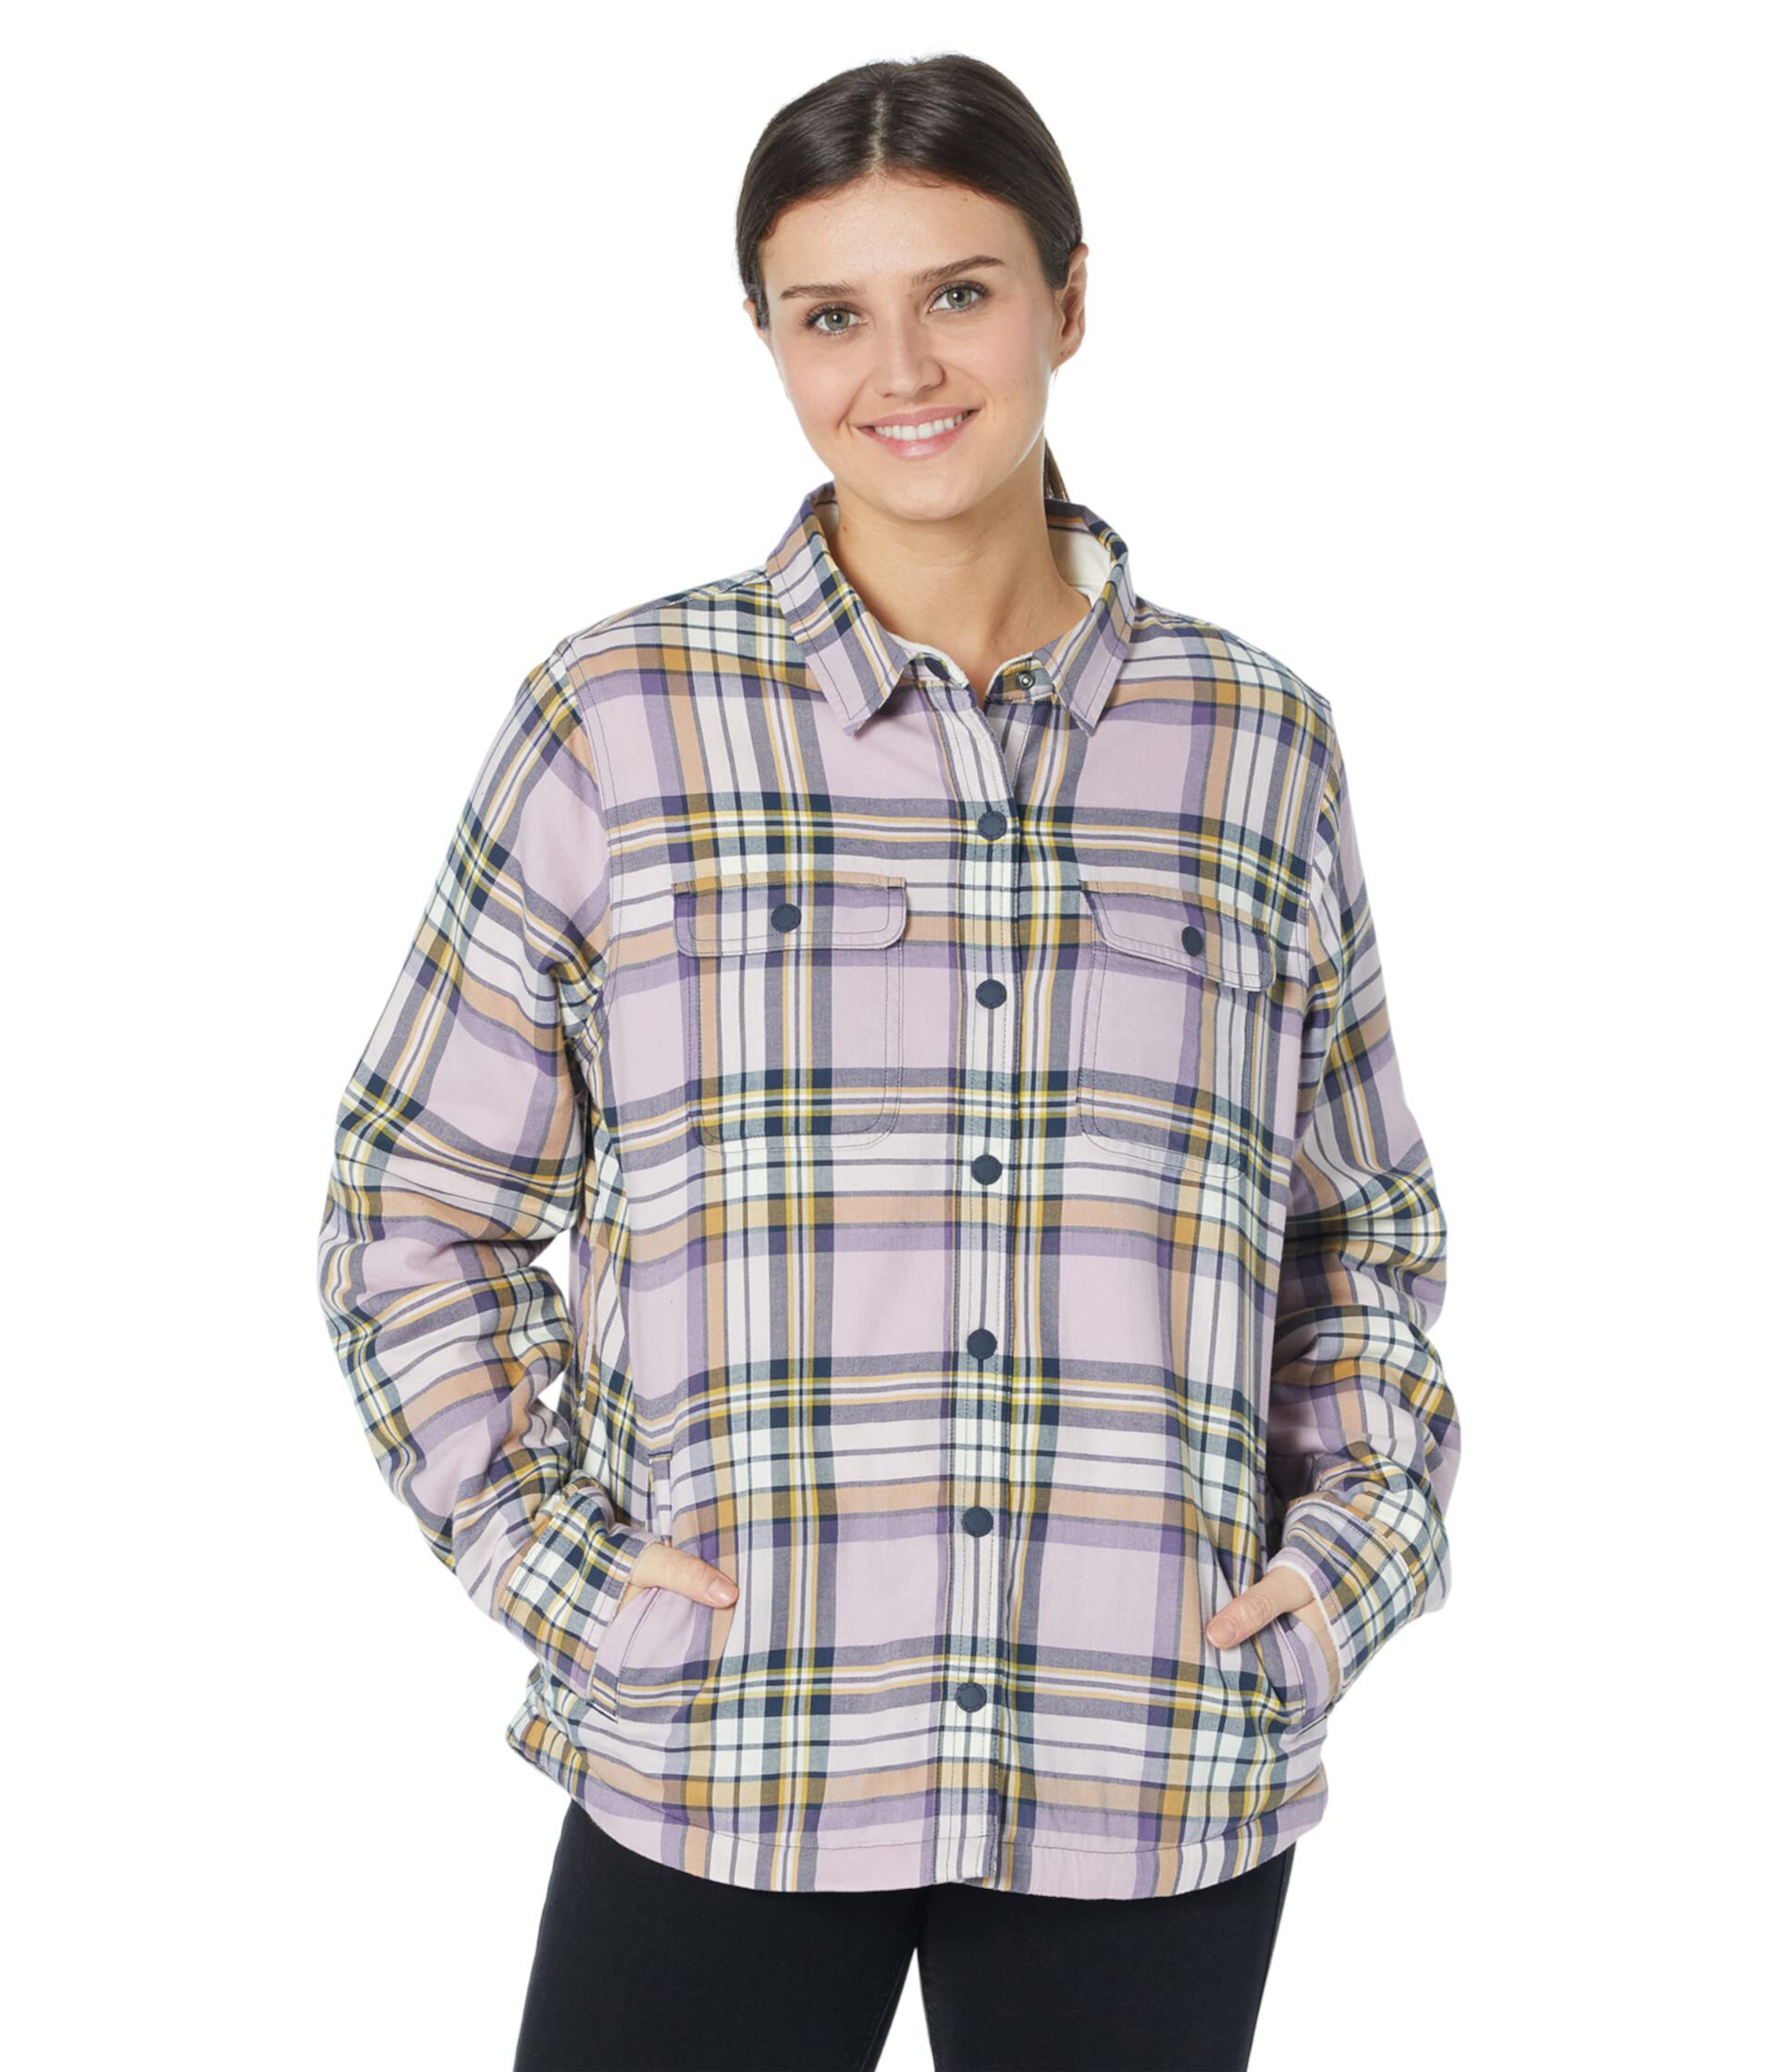 Фланелевая рубашка Petite с флисовой подкладкой и кнопками спереди в клетку L.L.Bean